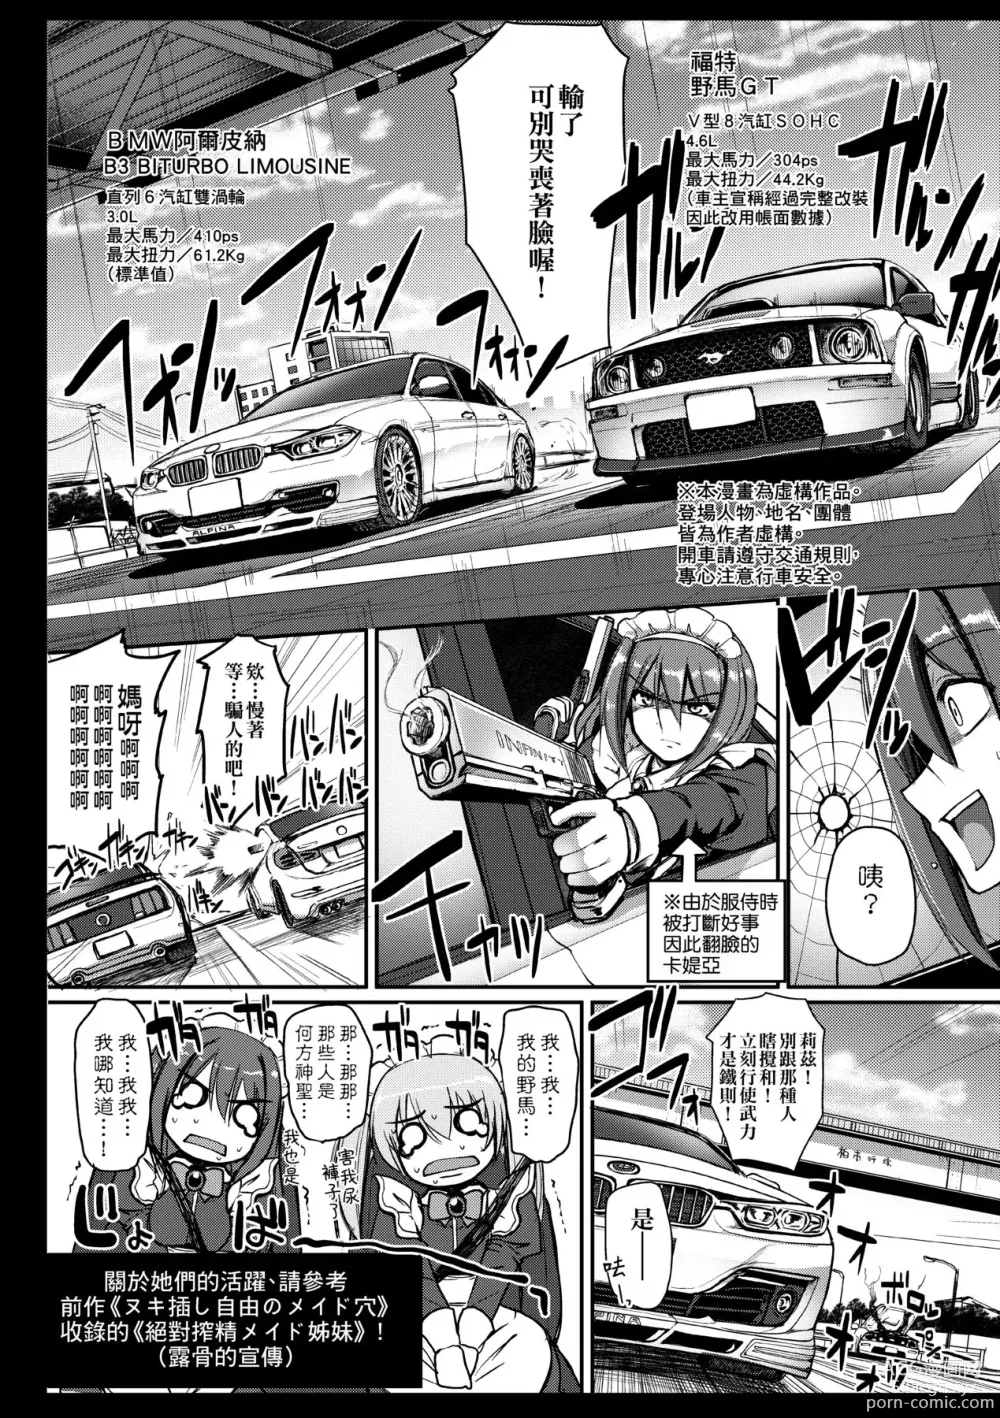 Page 209 of manga Maid no XXX wa Anata no Tame ni (decensored)